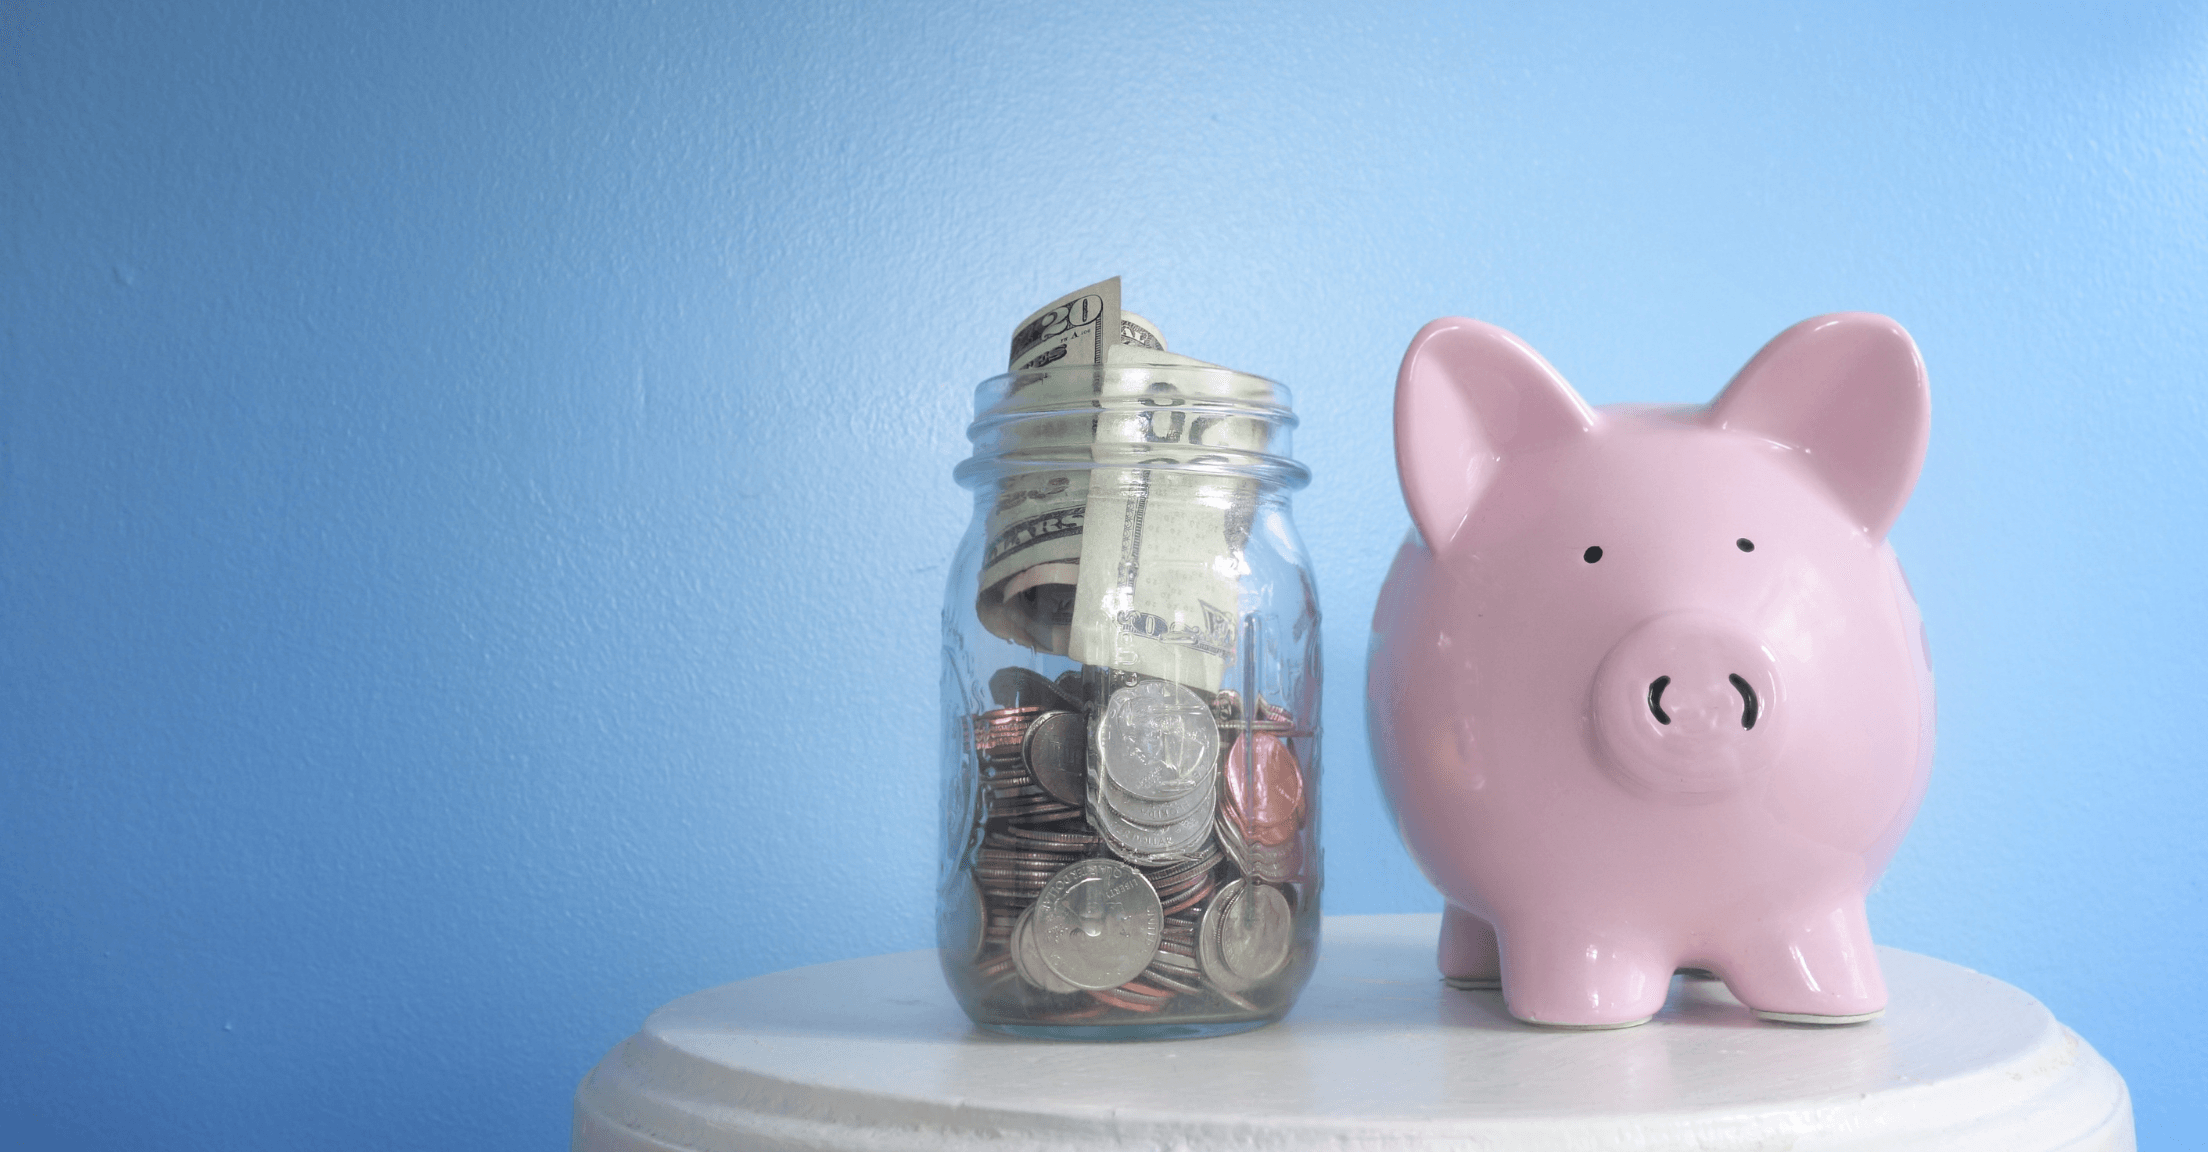 Piggy bank next to a jar full of money